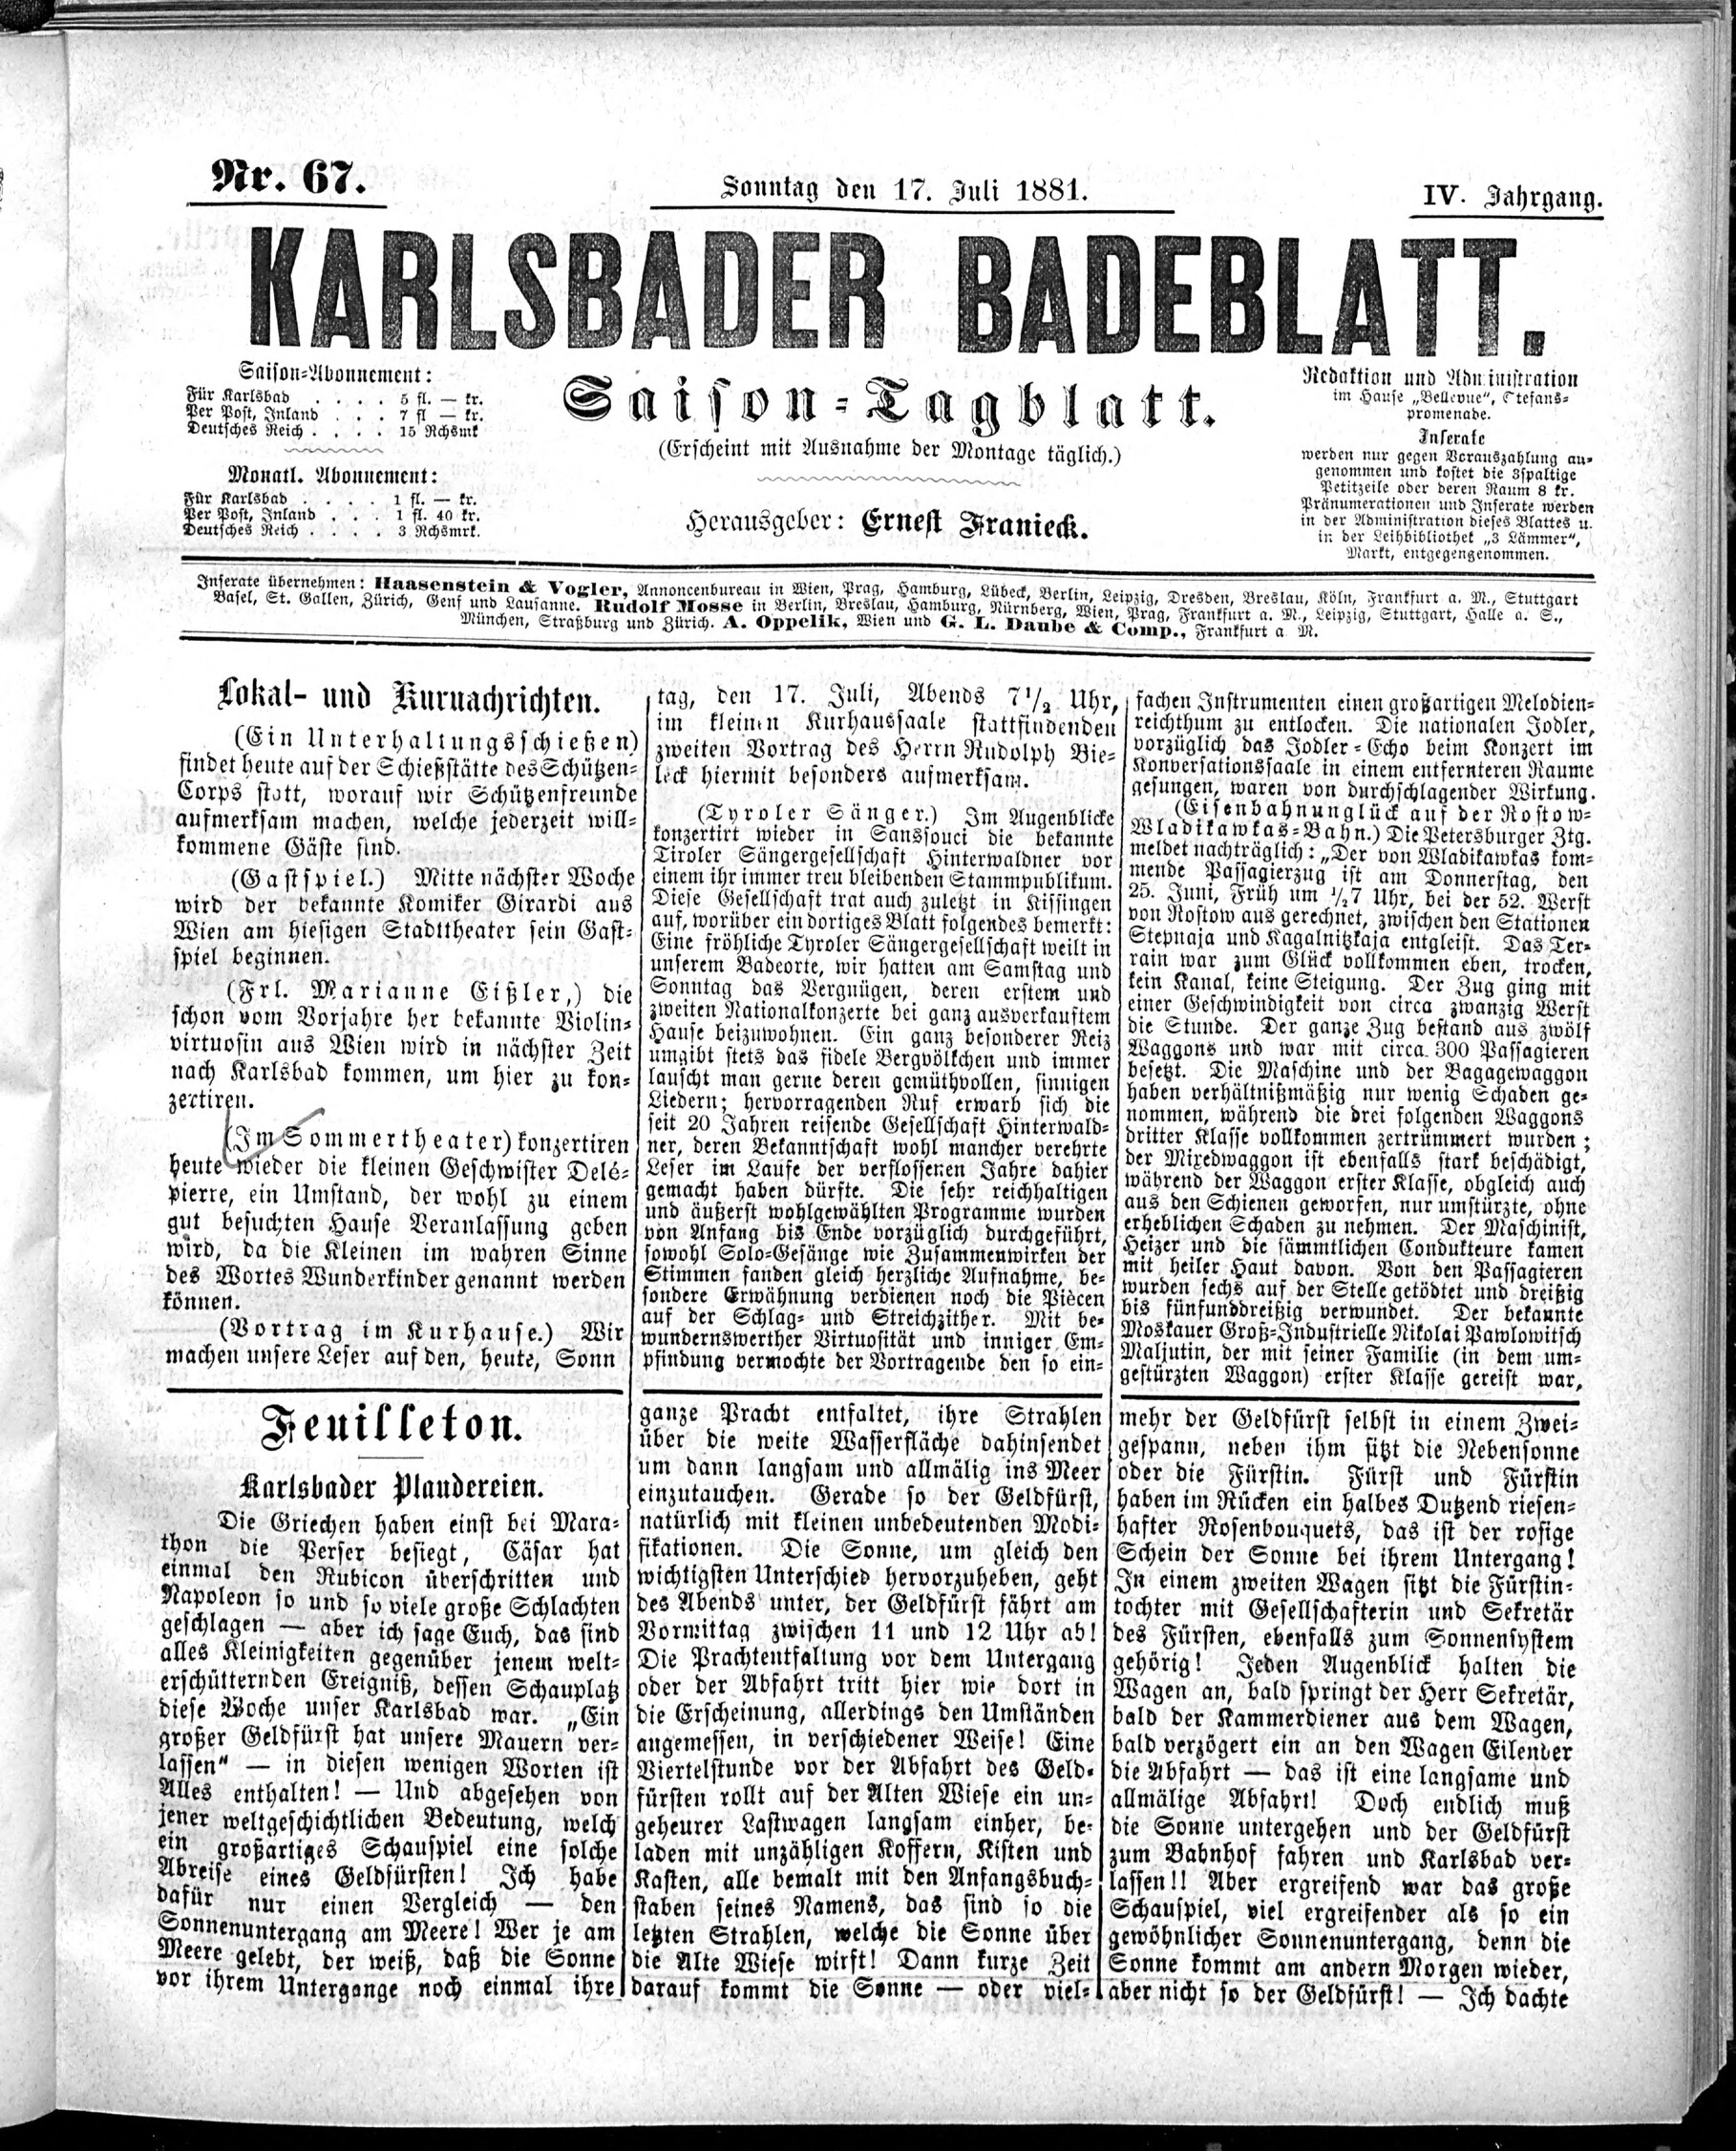 1. karlsbader-badeblatt-1881-07-17-n67_1385